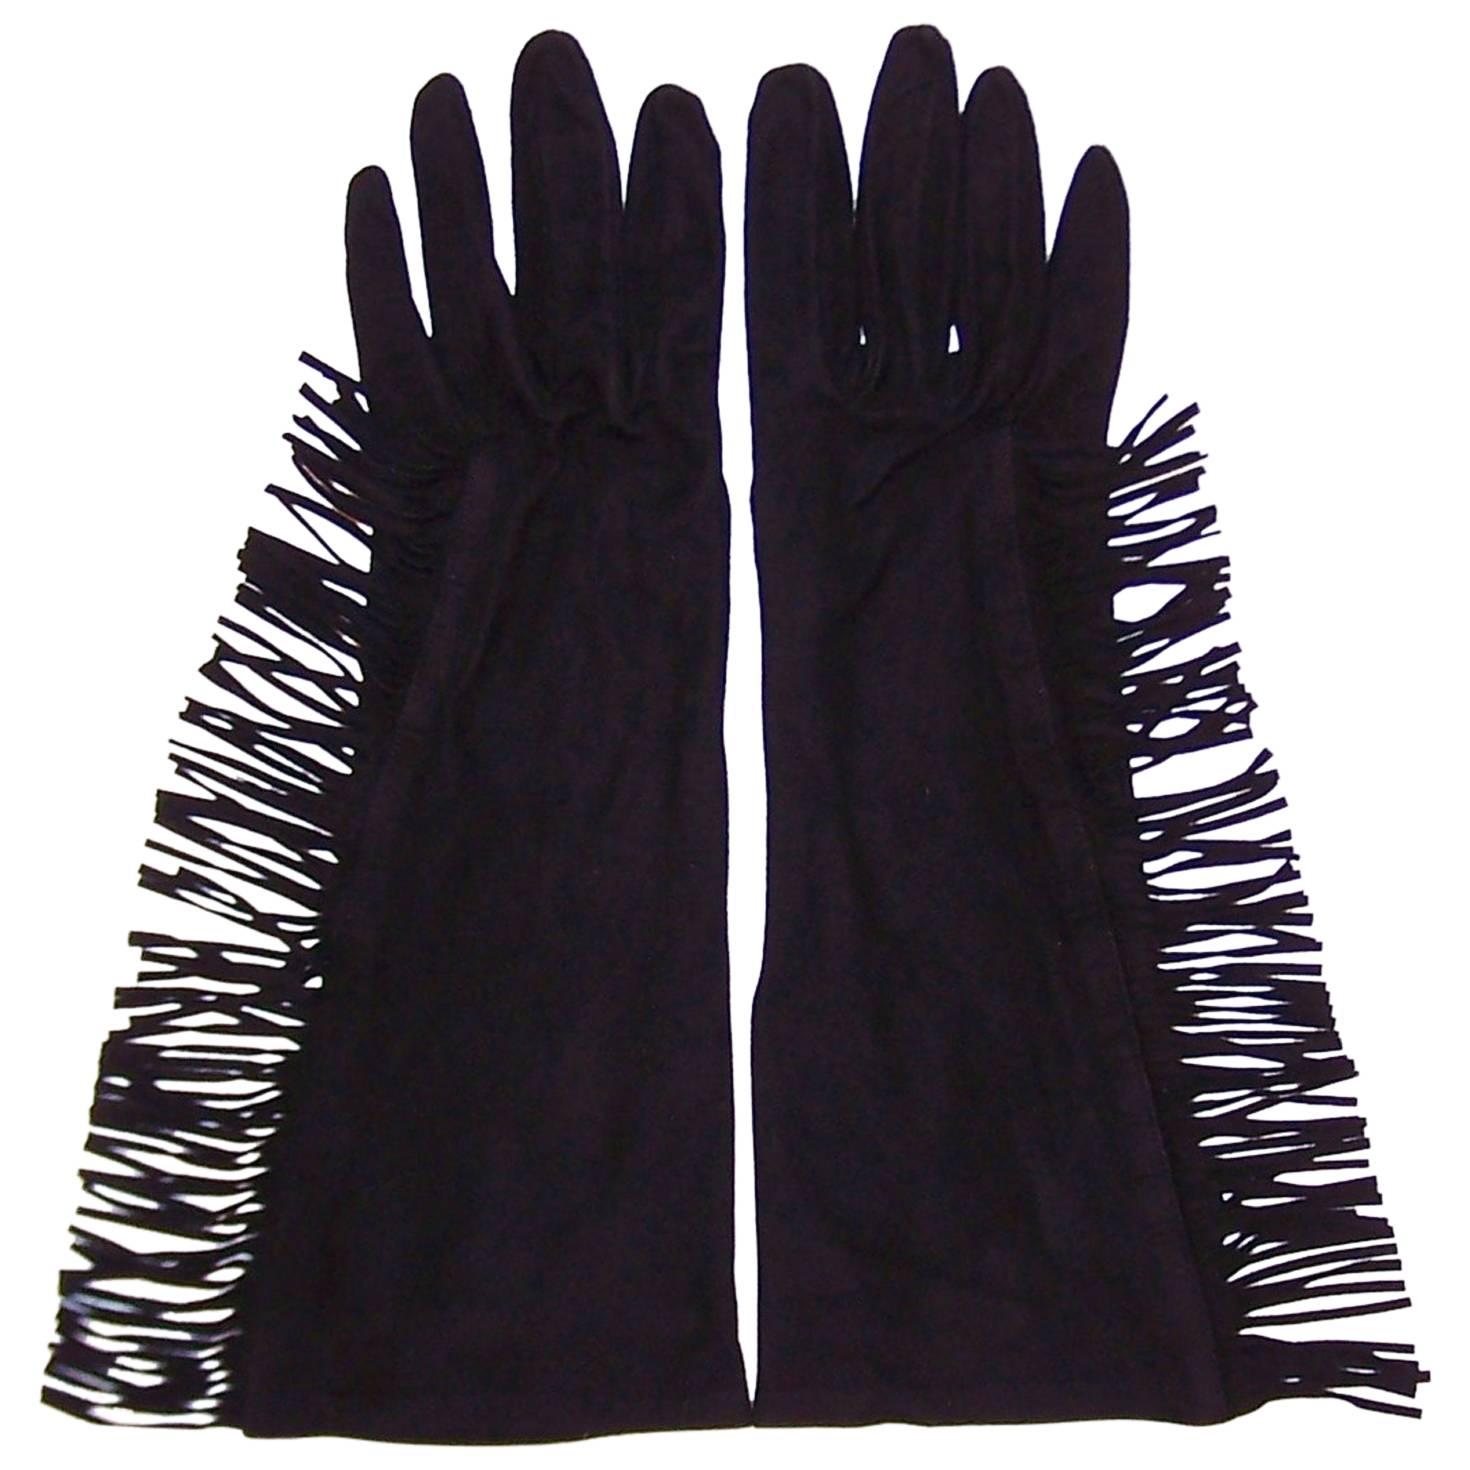 Fringe Benefits C.1980 Yves Saint Laurent Black Kidskin Suede Gloves